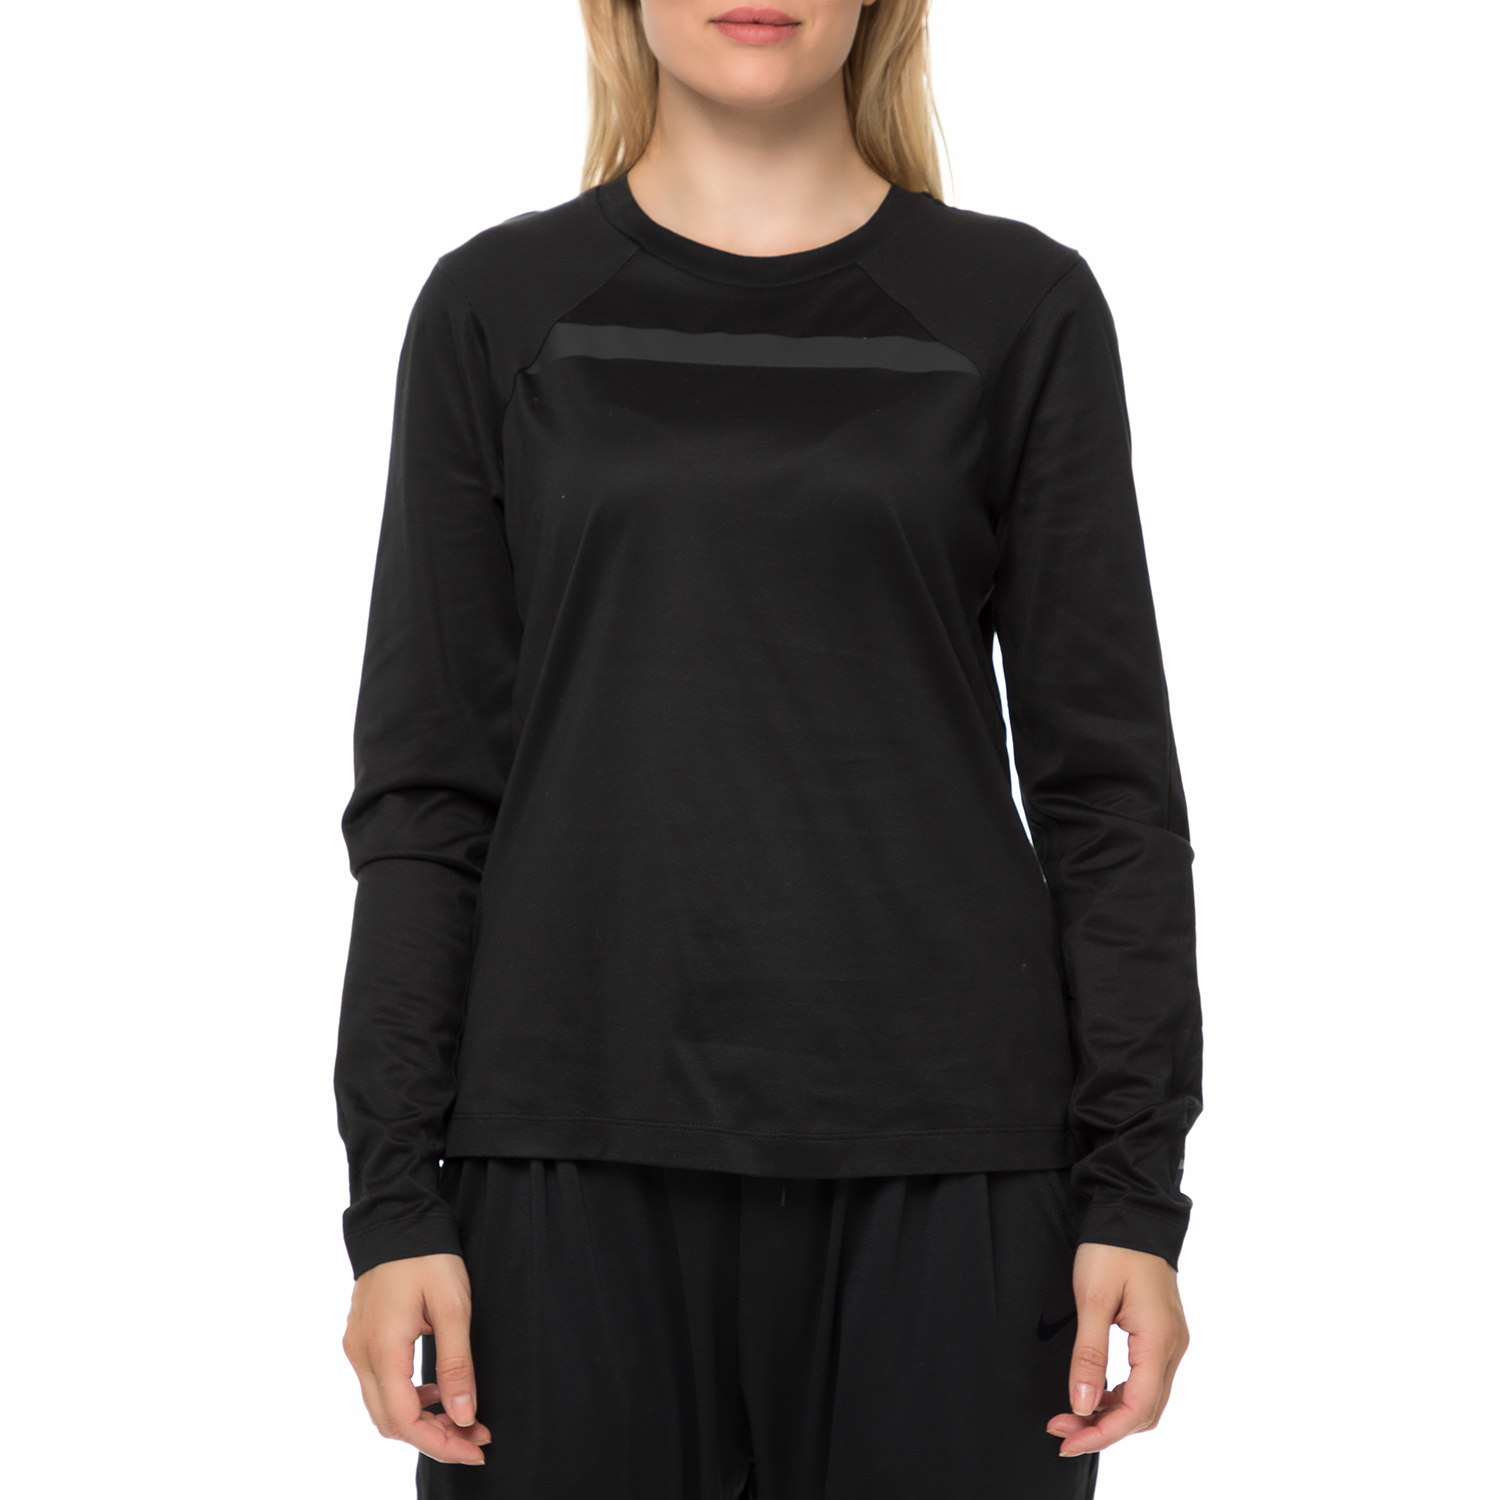 Γυναικεία/Ρούχα/Αθλητικά/Φούτερ-Μακρυμάνικα NIKE - Γυναικεία μακρυμάνικη μπλούζα NIKE NSW TOP LS BND GX μαύρη